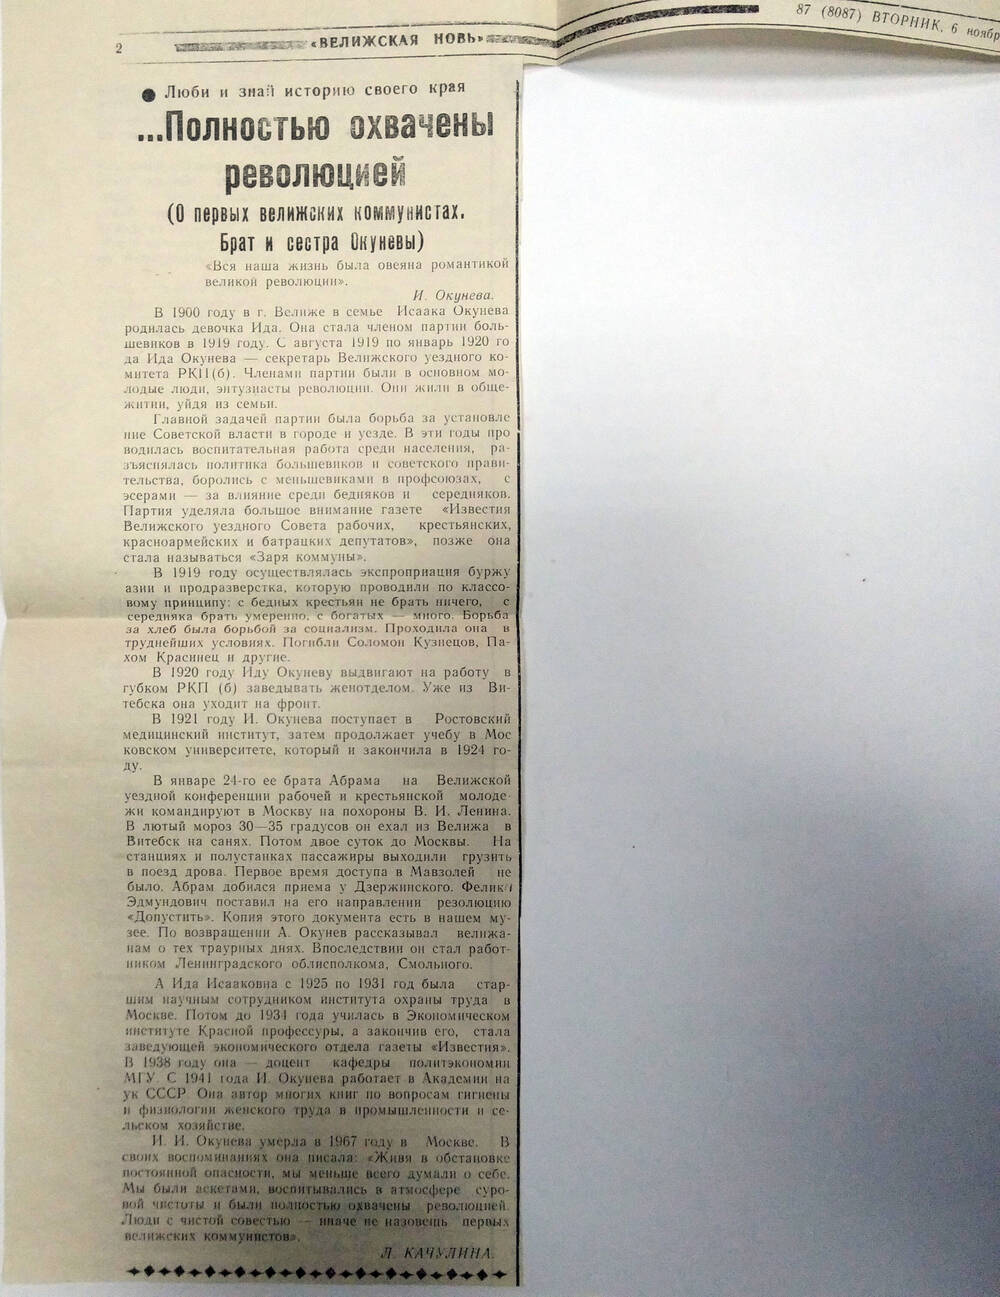 Статья Л. Качулина ... Полностью охвачены революцией.  Из газеты Велижская новь №87 (8087) от 6 ноября 2001 г.